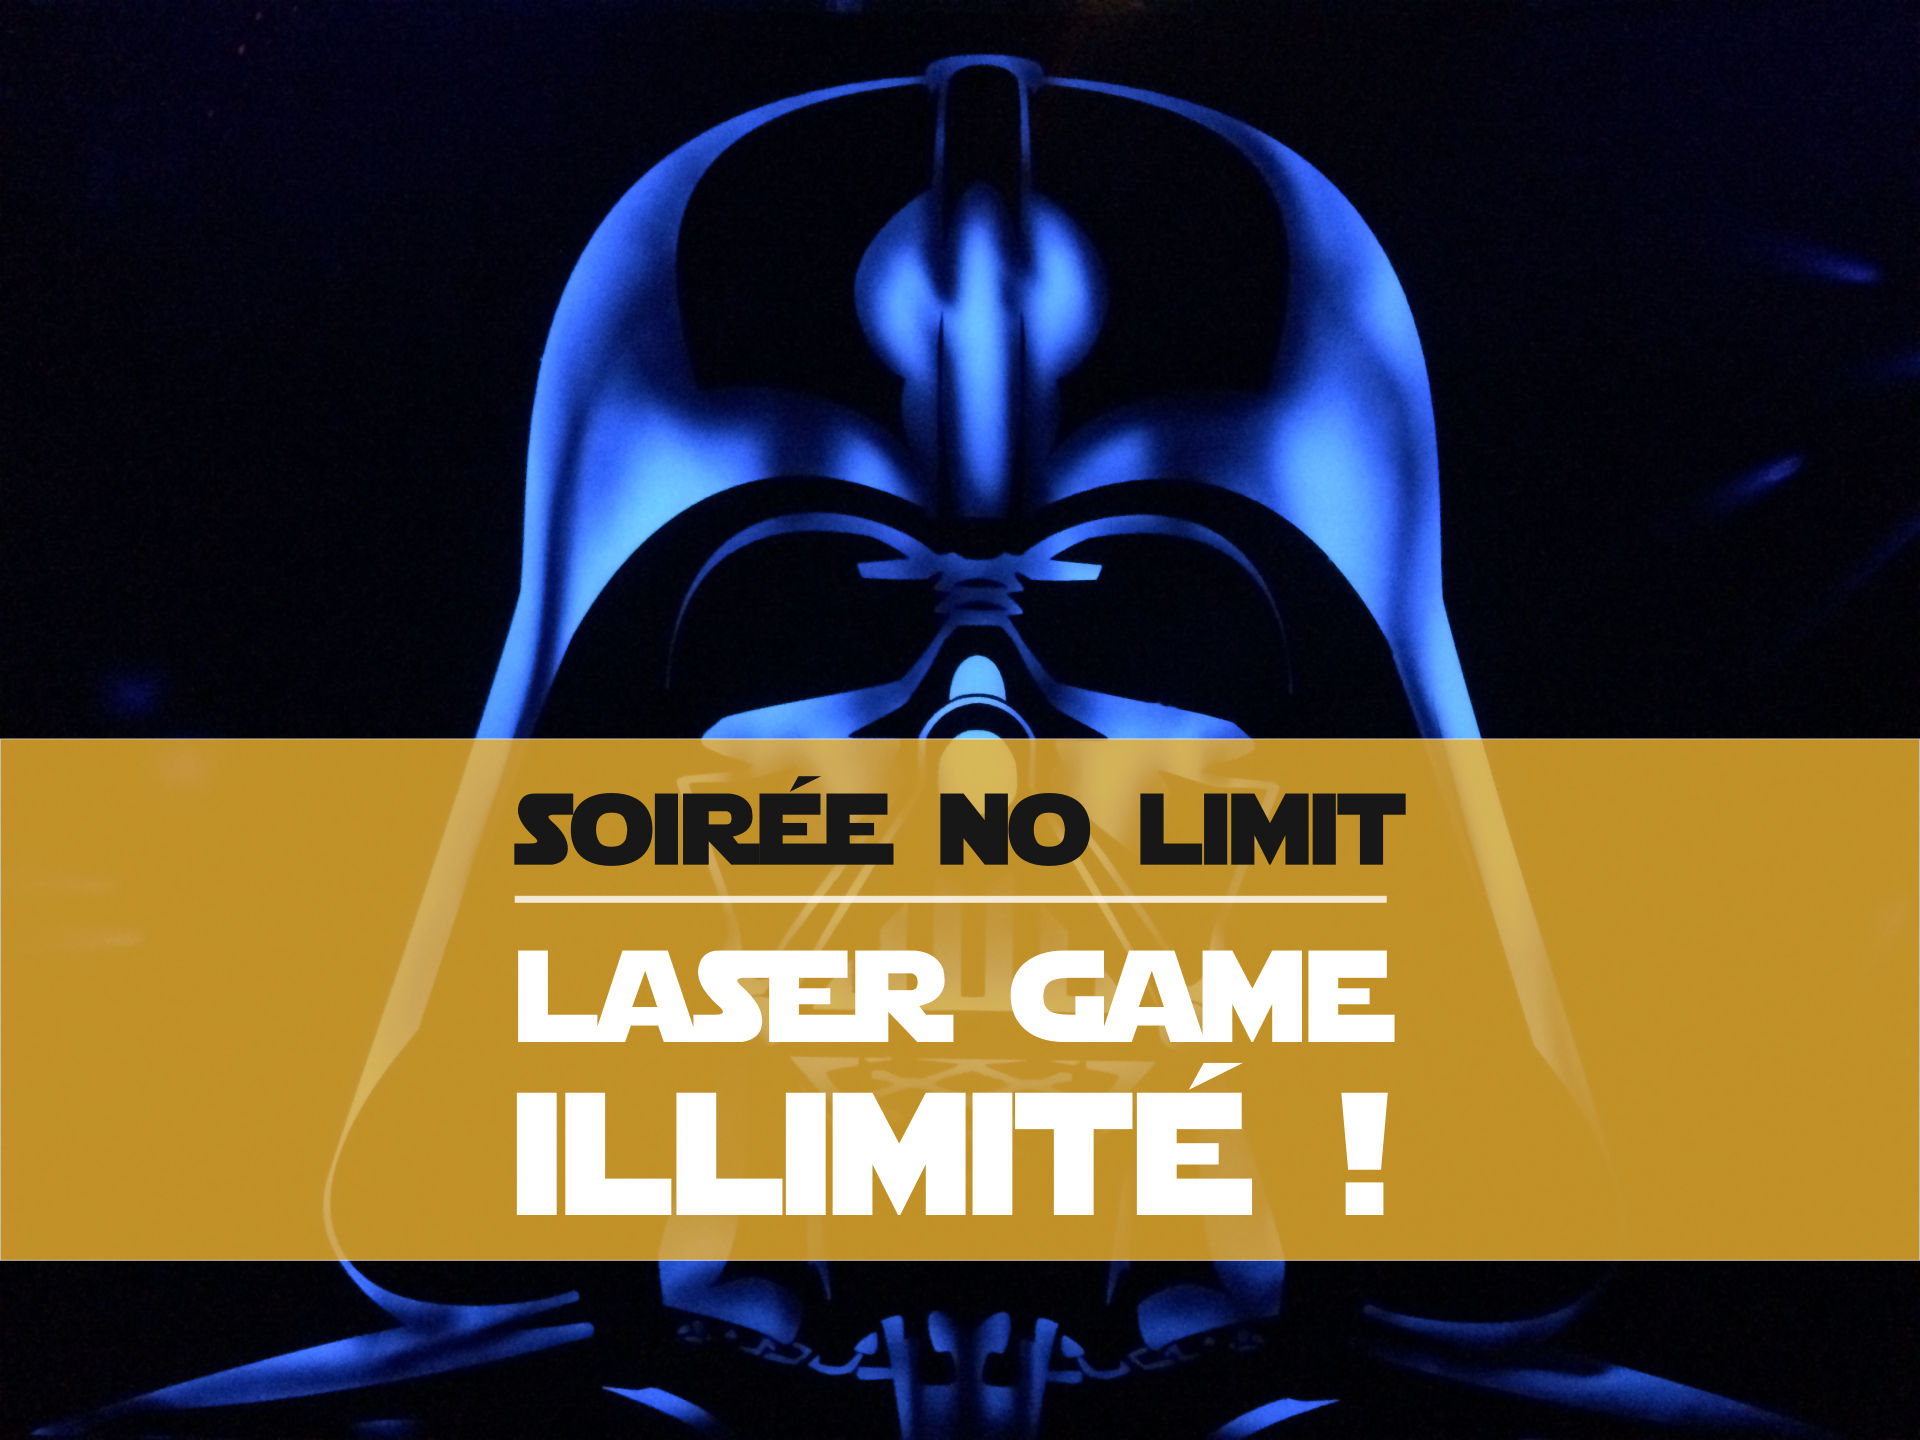 Laser game illimité pour 20€ ! Soirée spéciale No Limit - Laser Concept  Avignon